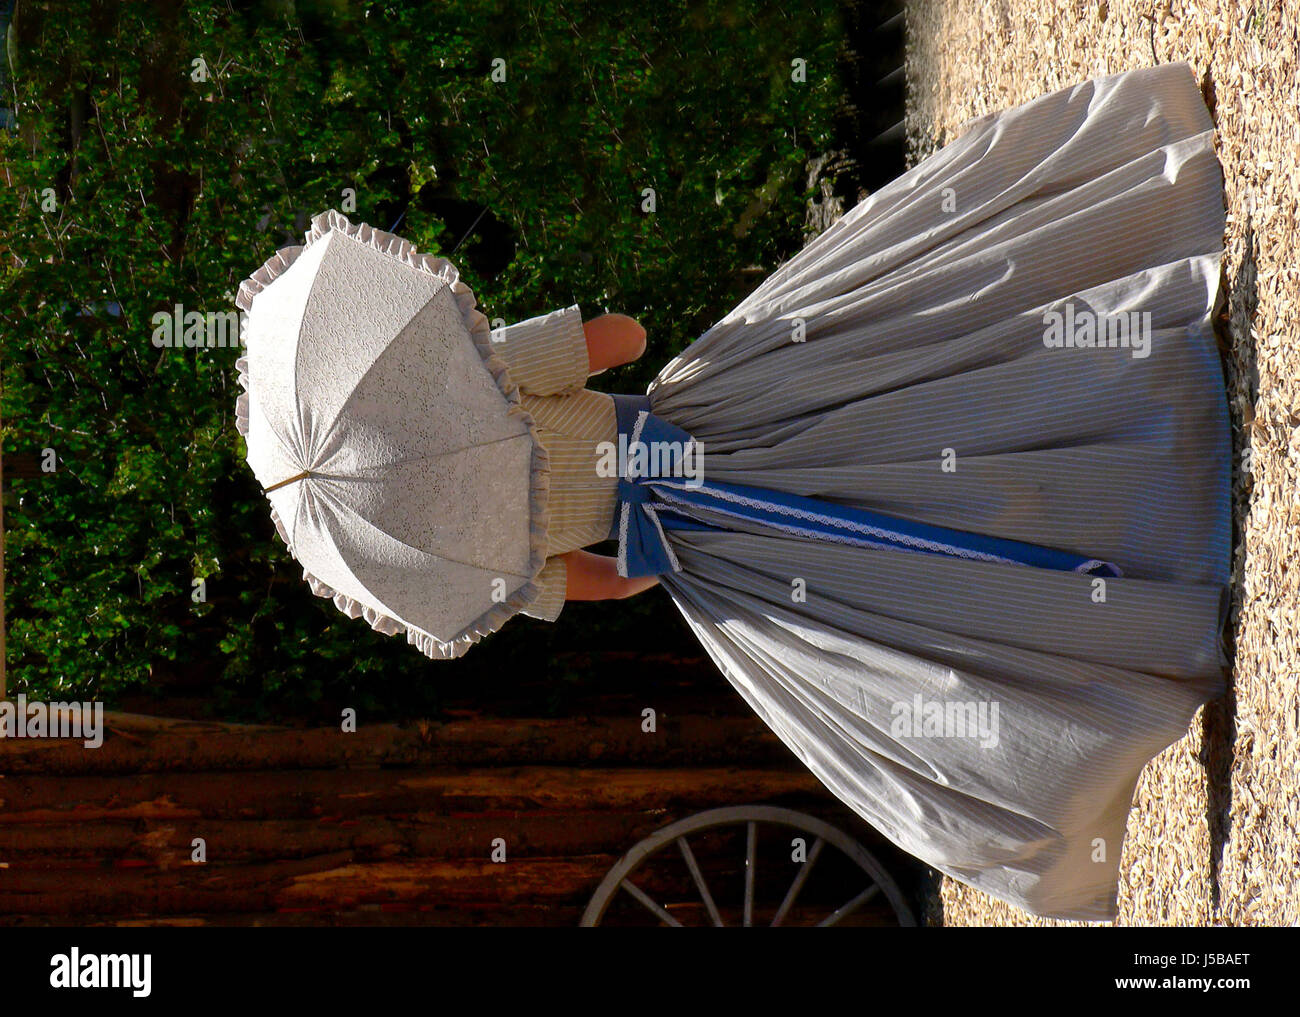 Rueda de moda usa la sombrilla colono cartwheel country western a la vieja usanza desgastado Foto de stock